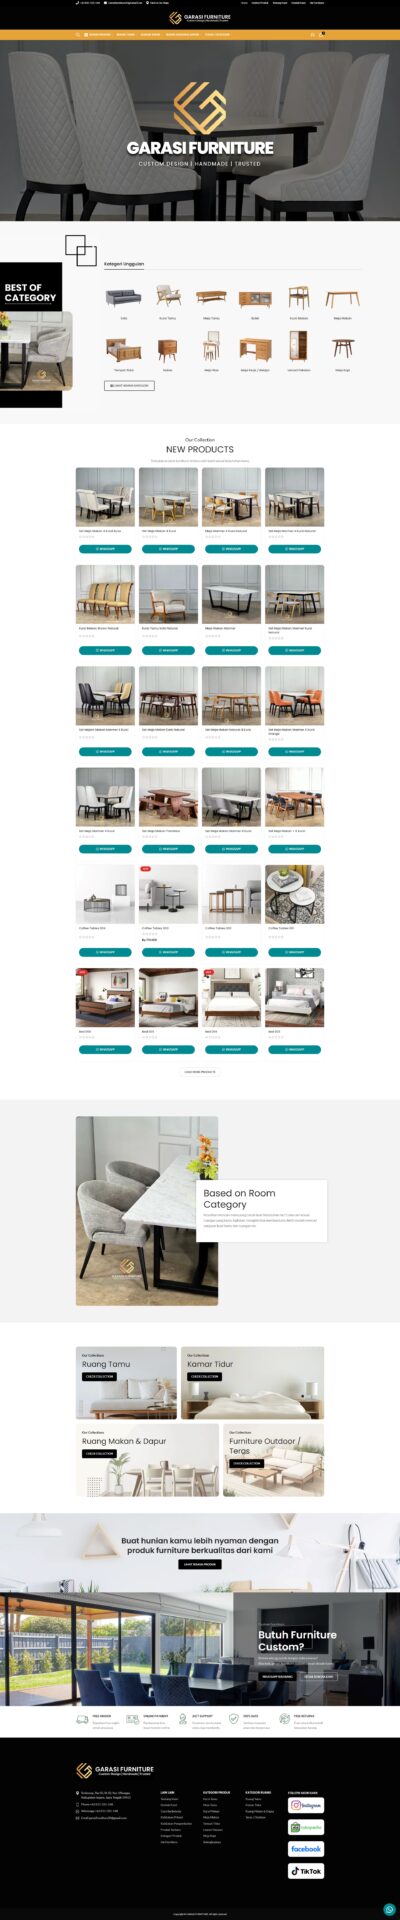 website furniture - garasifurniture.com